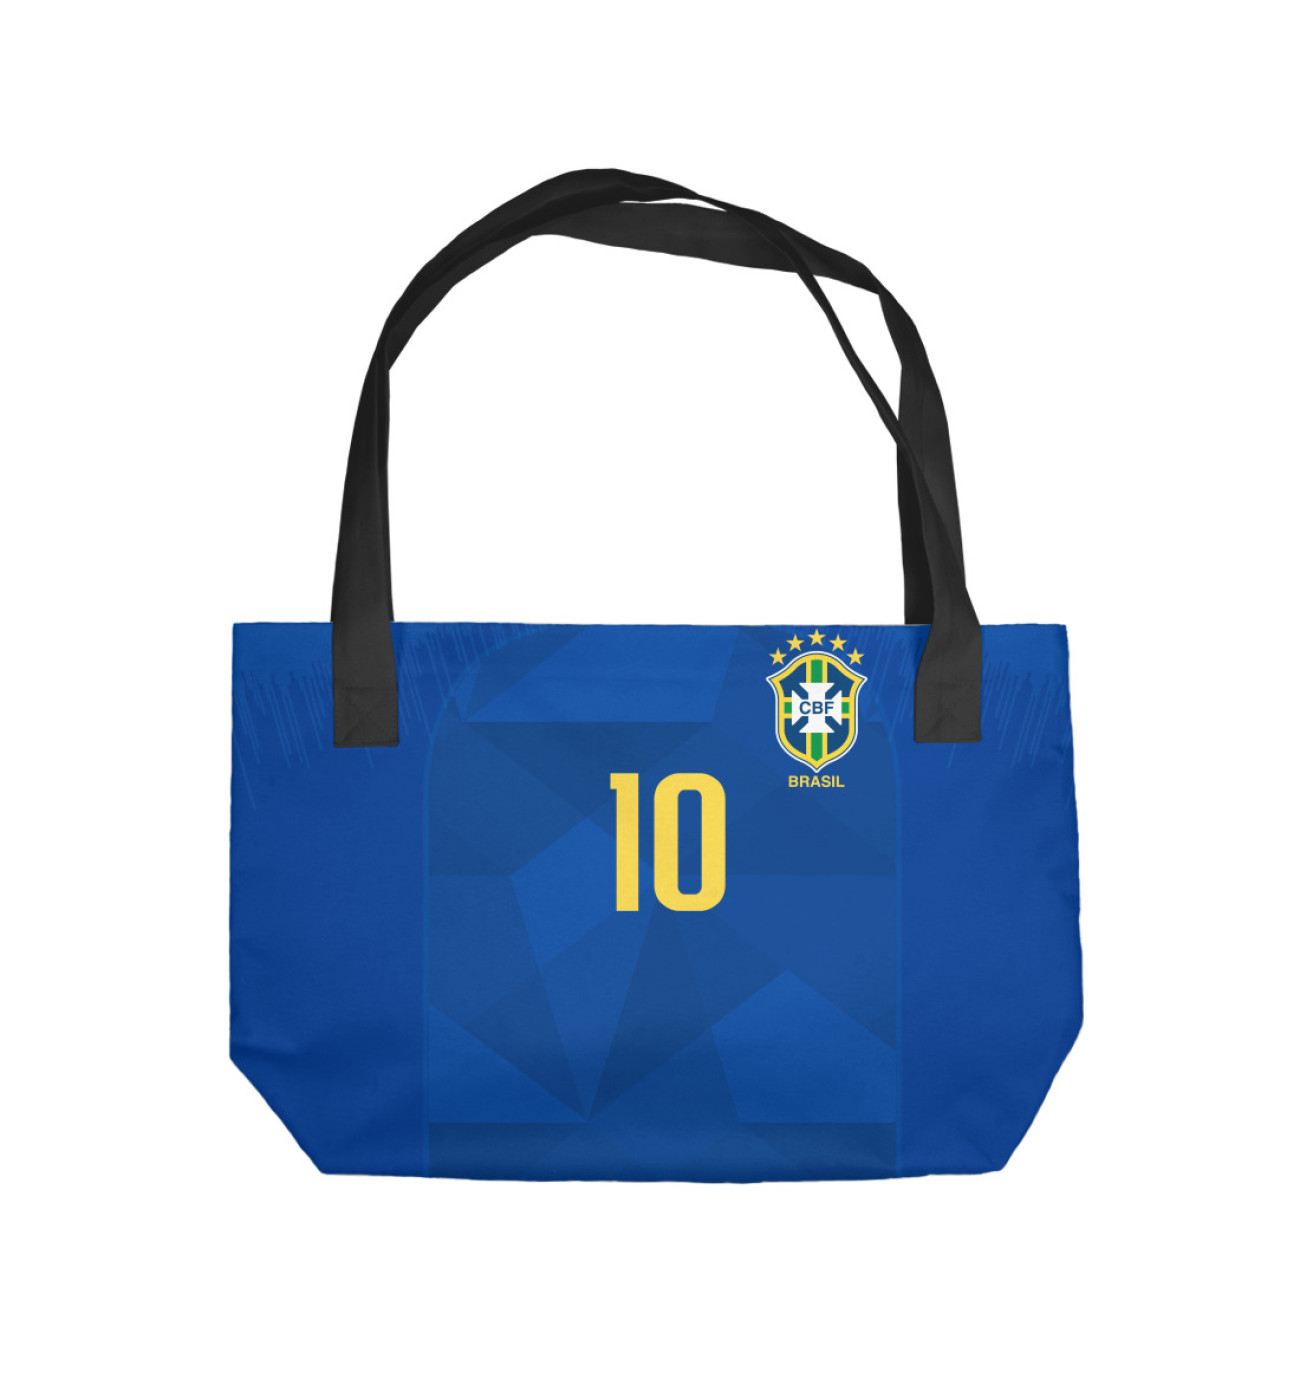 Пляжная сумка Neymar World Cup 2018, артикул: FLT-835637-sup